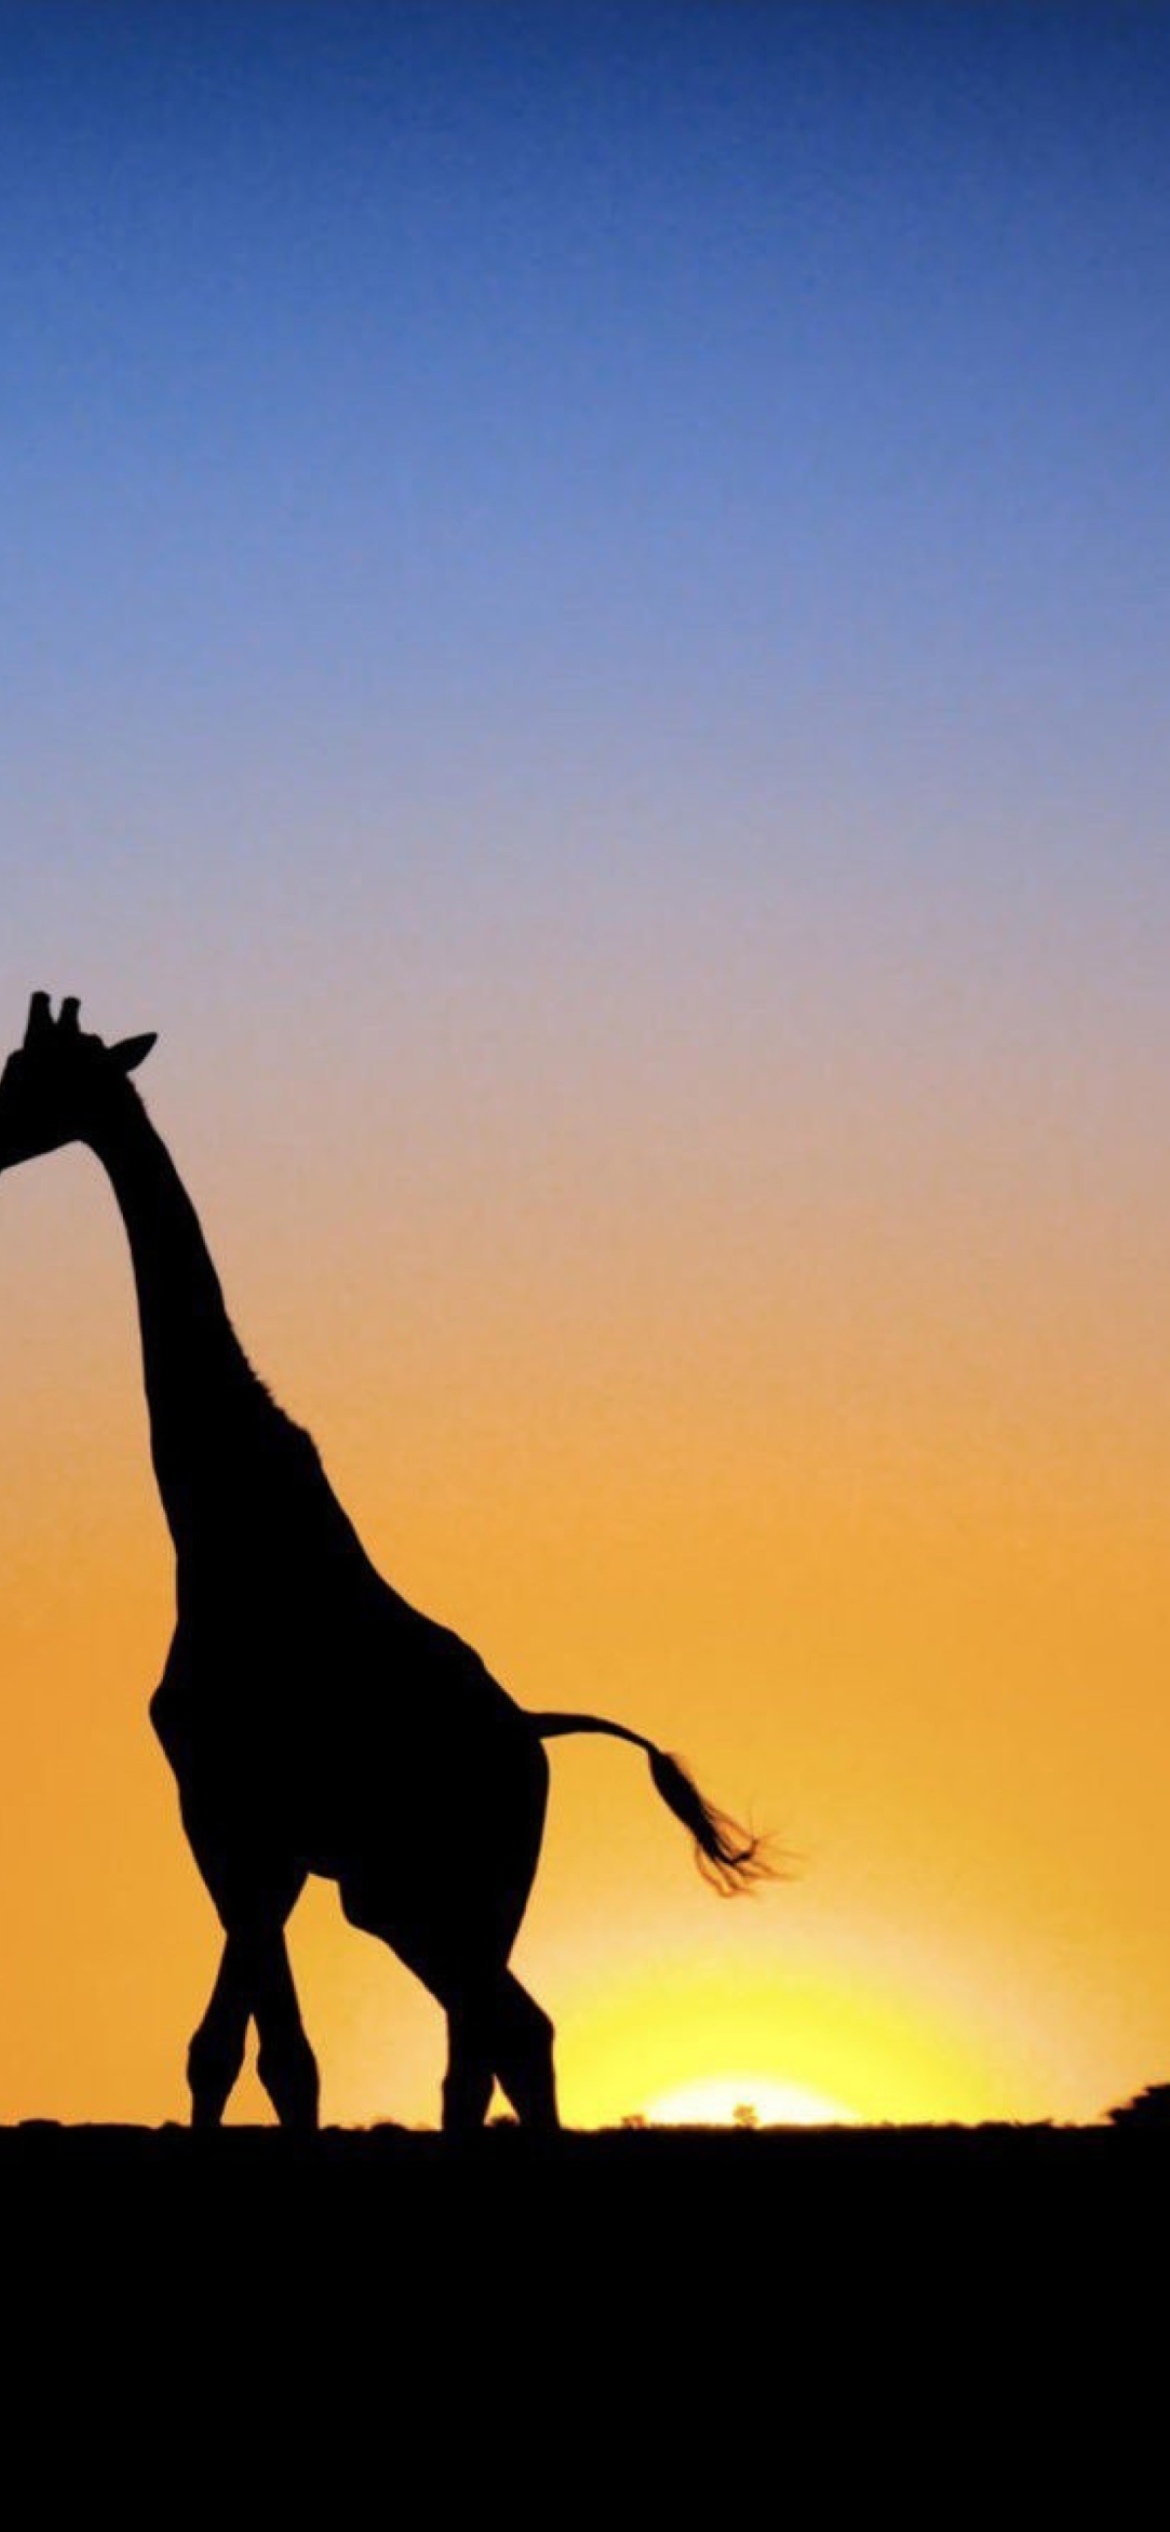 Sfondi Safari At Sunset - Giraffe's Silhouette 1170x2532